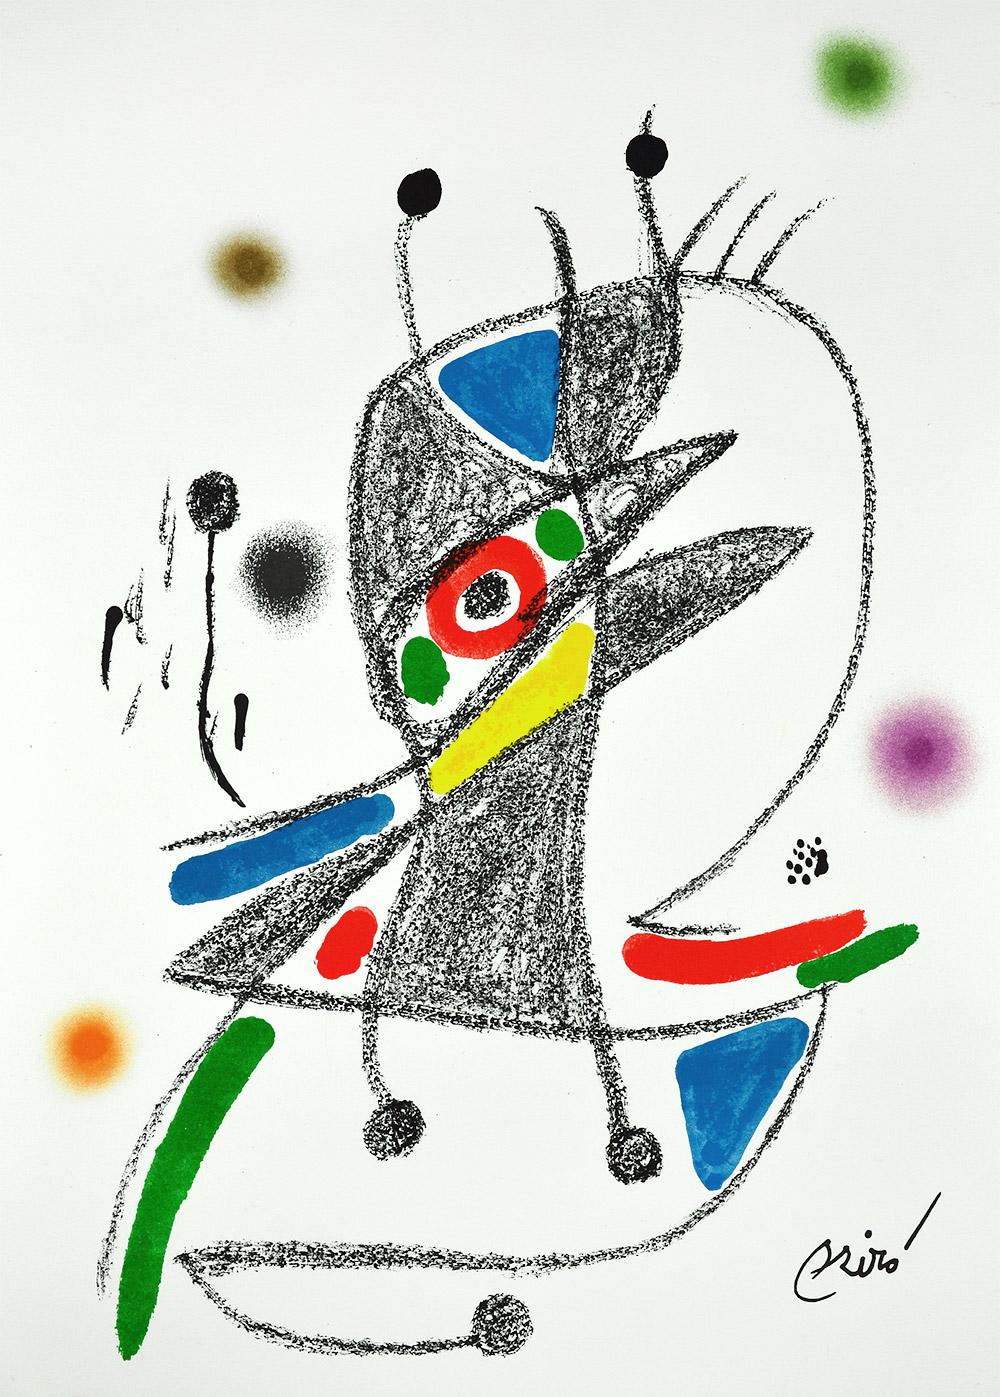 Joan Miró - Maravillas con variaciones acrósticas en el jardín de Miró II
Date de création : 1975
Support : Lithographie sur papier Gvarro
Édition : 1500
Taille : 49,5 x 35,5 cm
Condit : En très bon état et jamais encadré
Observations : Lithographie